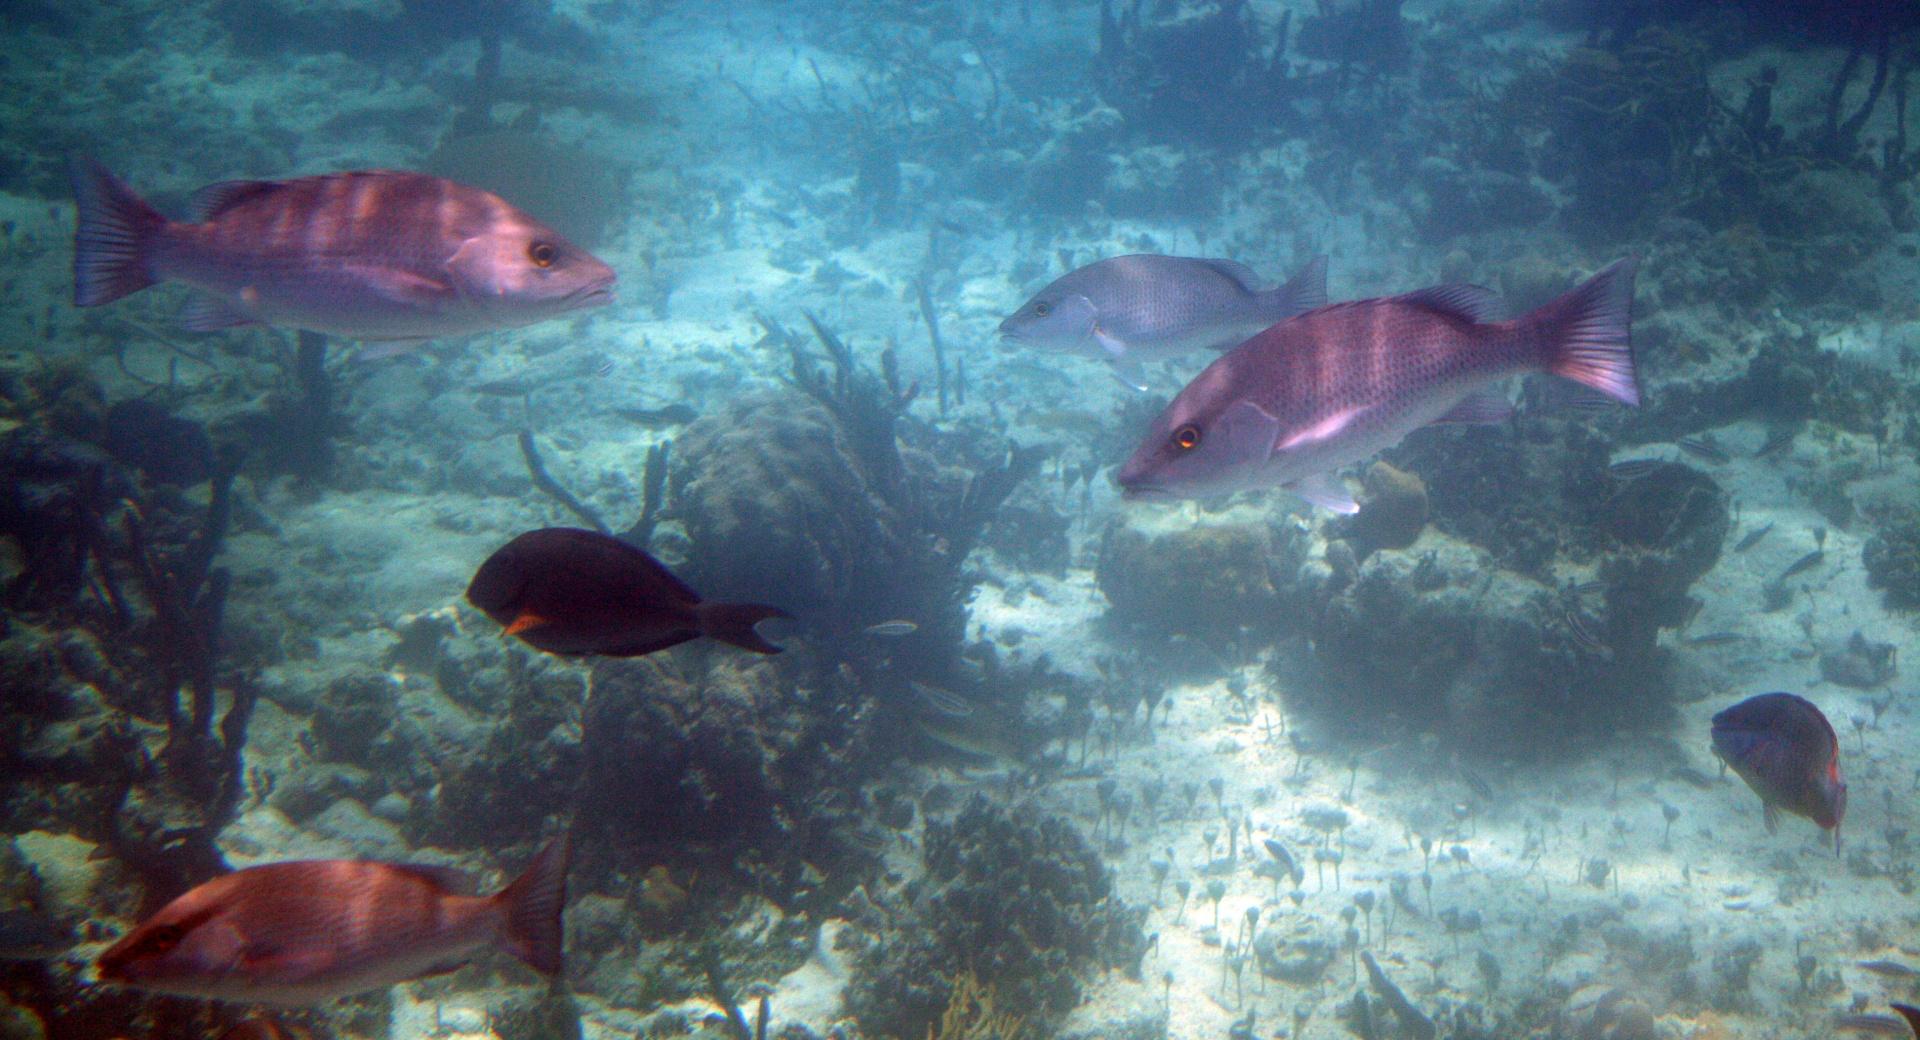 Bahamas Fish at 1024 x 1024 iPad size wallpapers HD quality